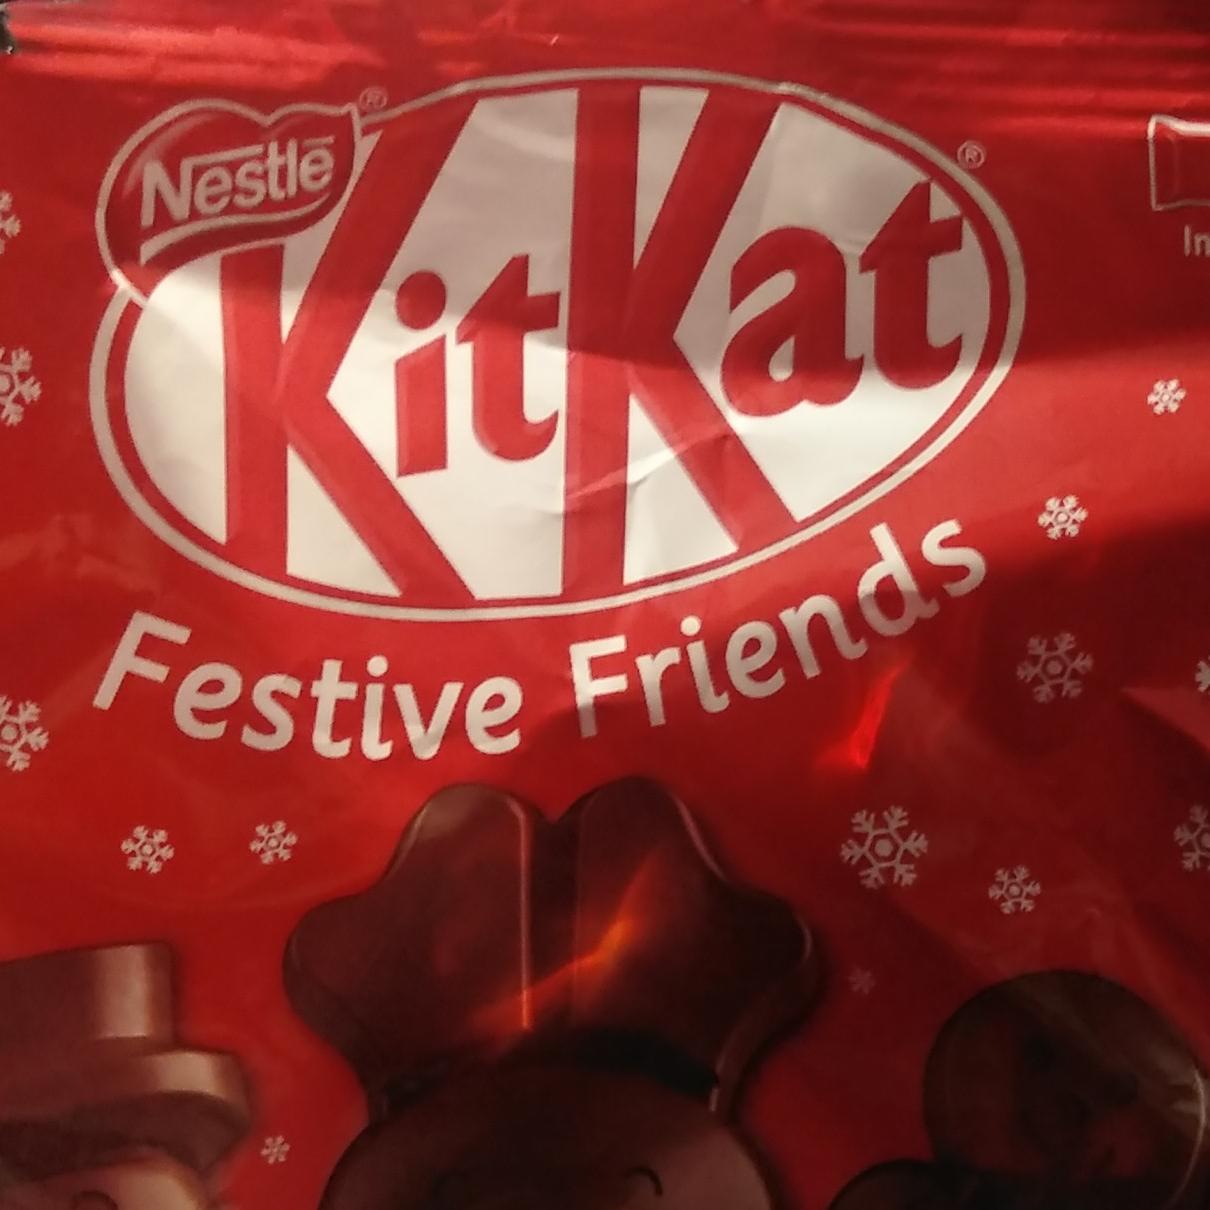 Zdjęcia - KitKat festive friends Nestlé